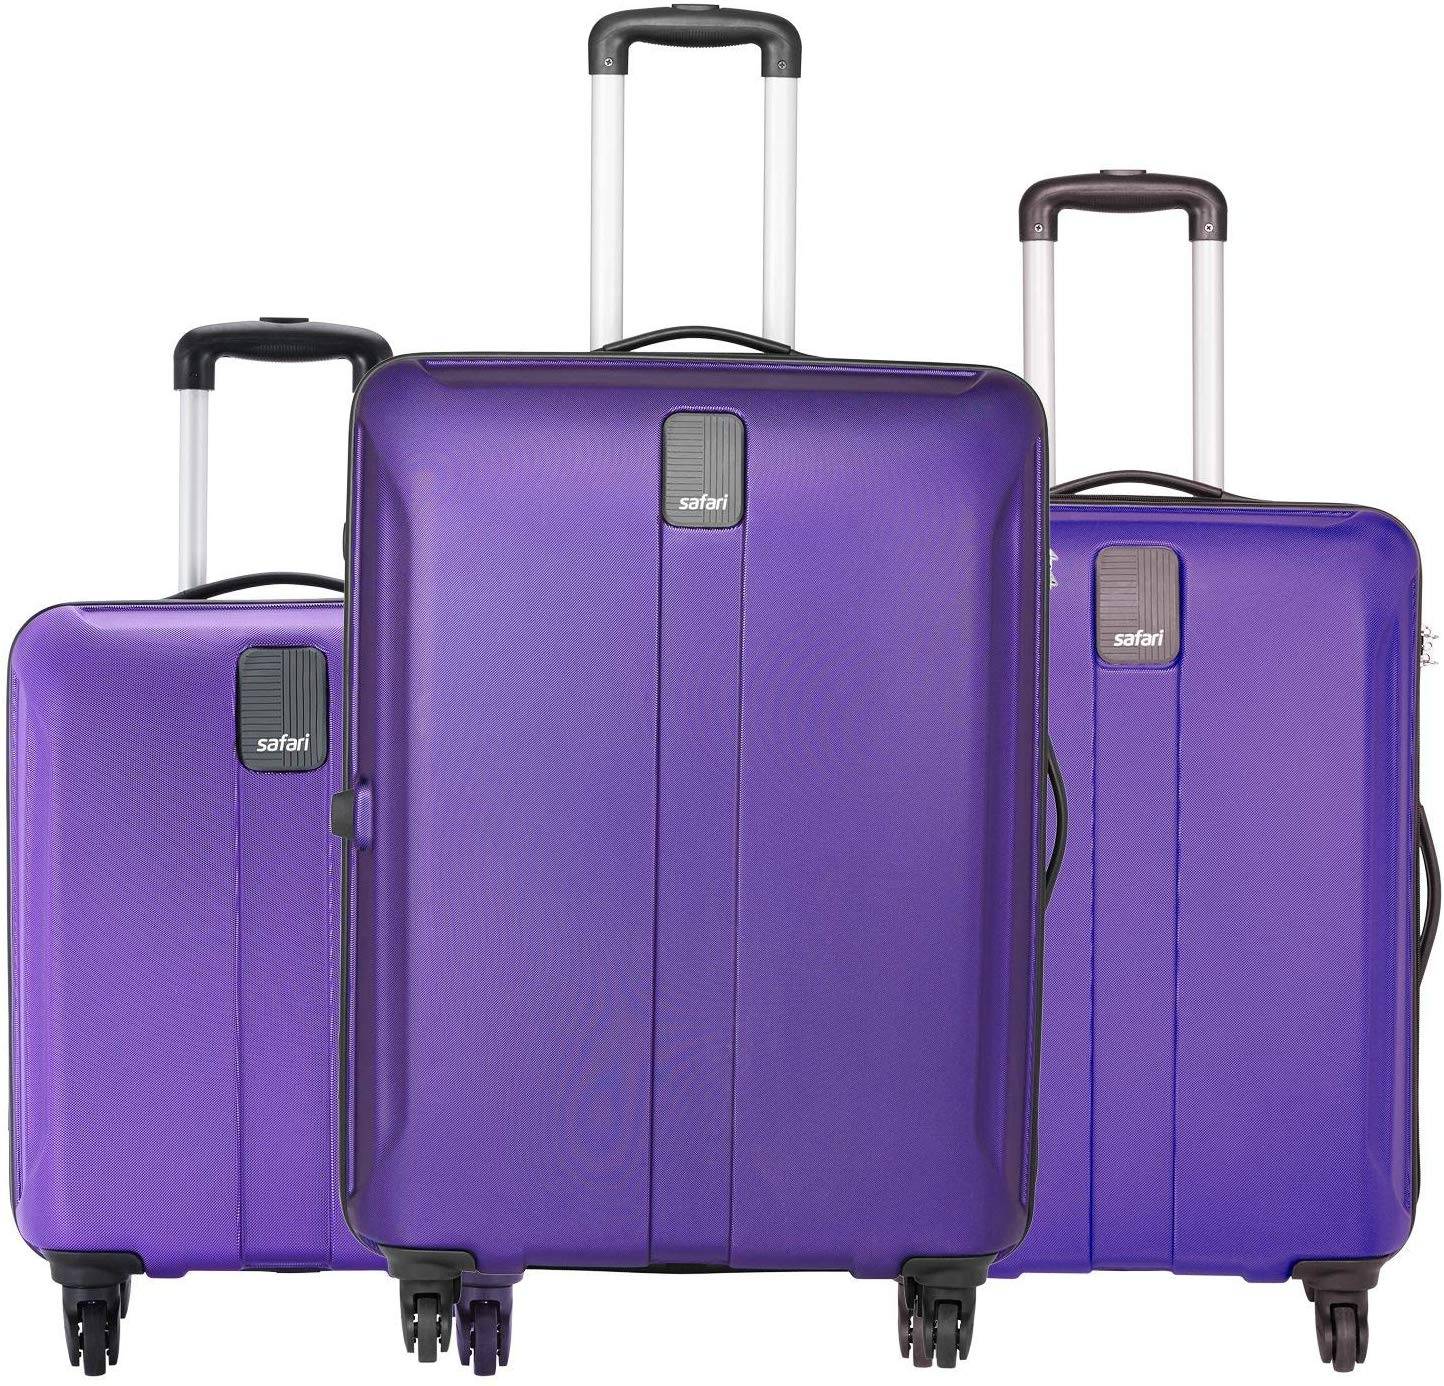 safari suitcase set of 3 price